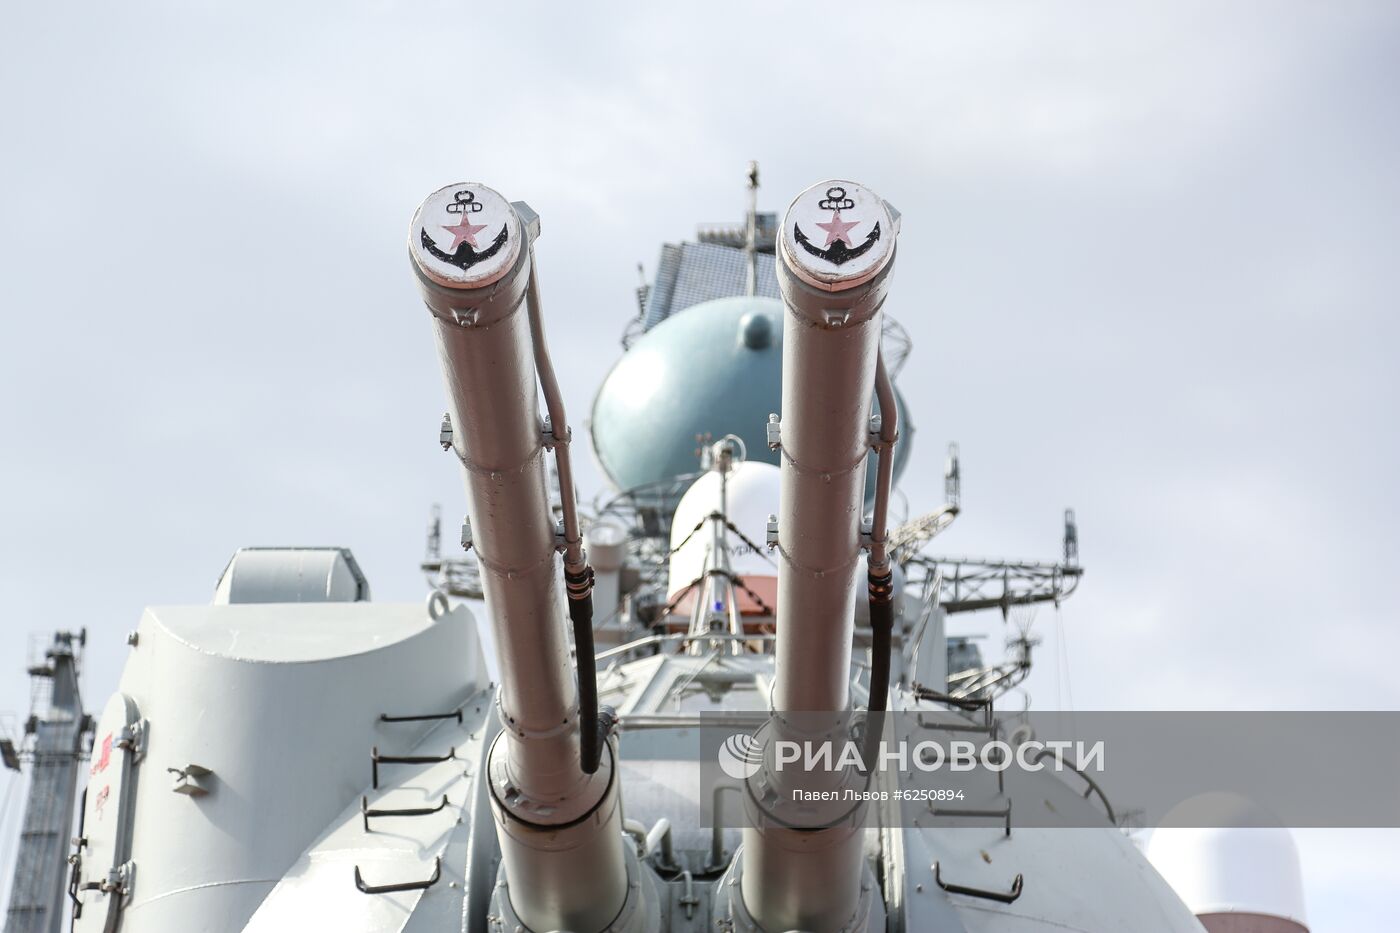 Атомный крейсер "Пётр Великий"